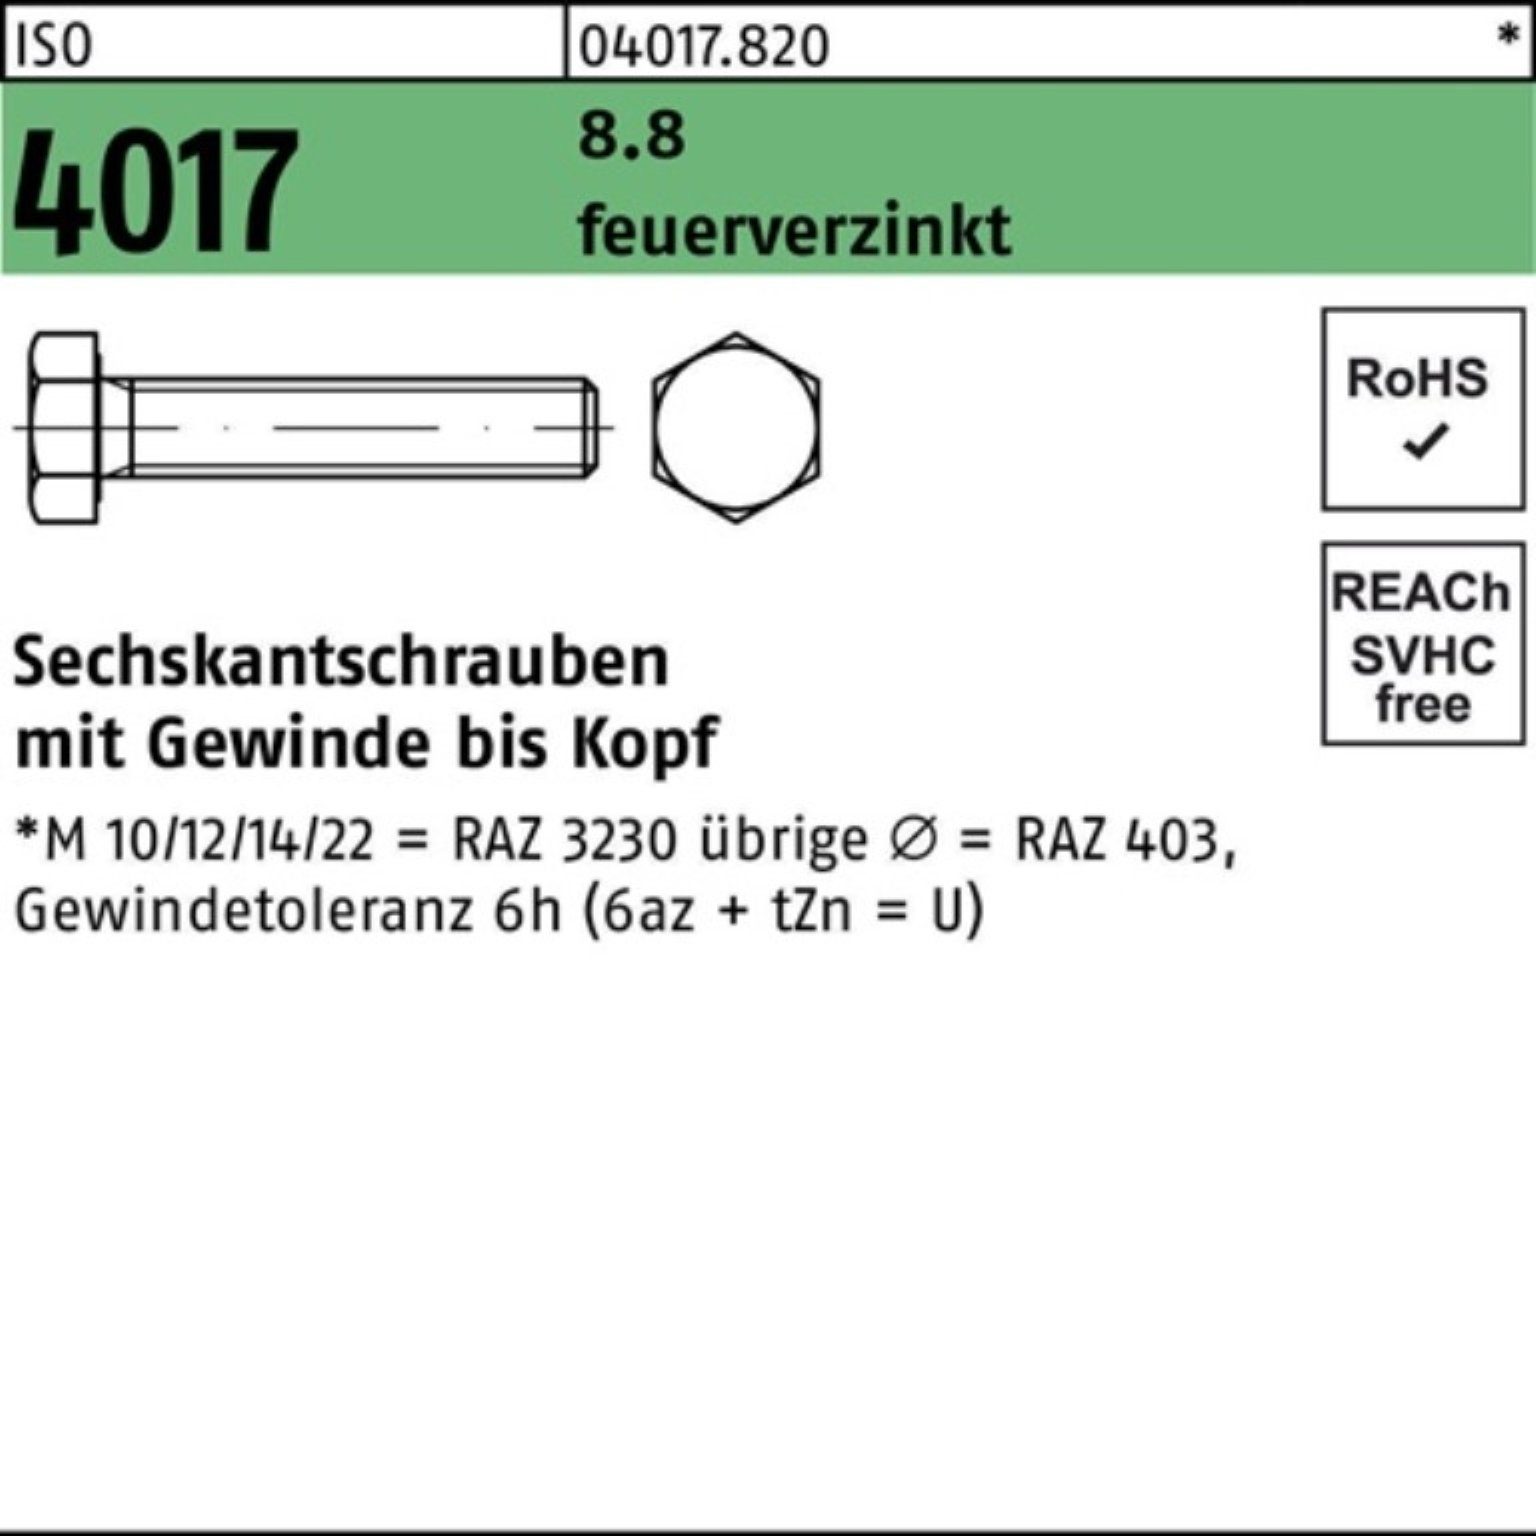 Bufab Sechskantschraube 100er Pack Sechskantschraube ISO 4017 VG M16x 170 8.8 feuerverz. 25 St